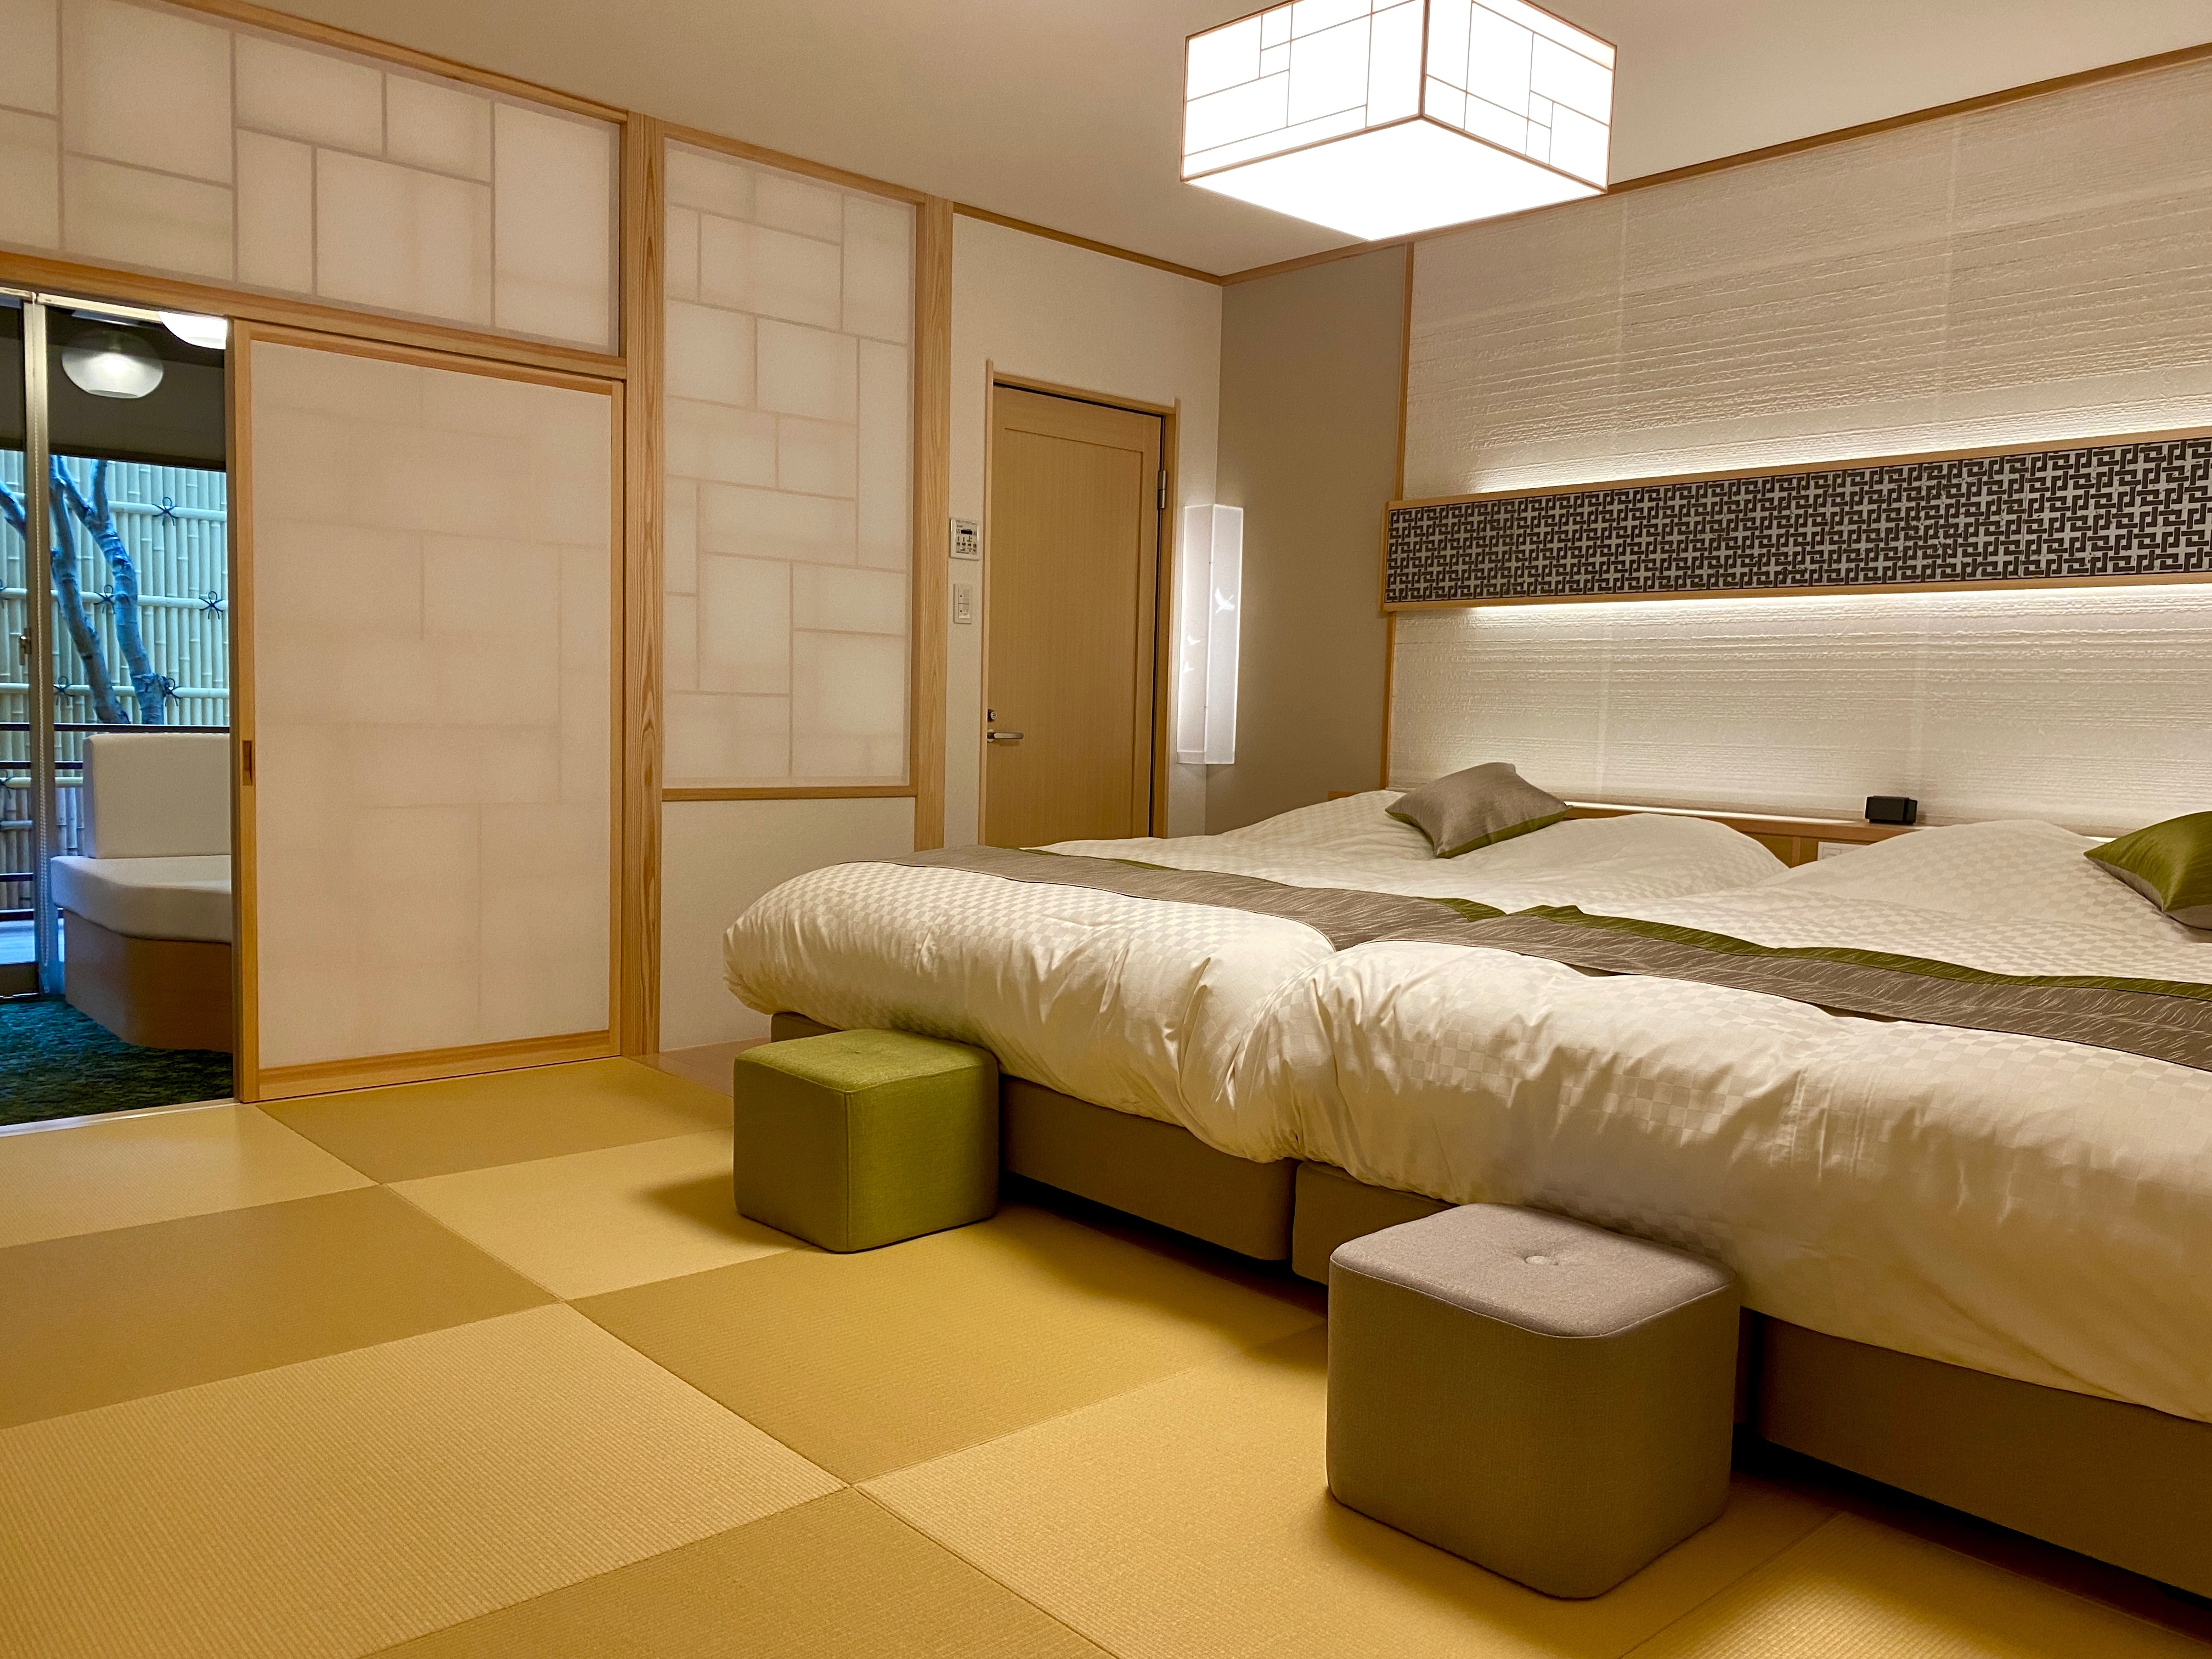 ห้องนอนสไตล์ญี่ปุ่นทันสมัยพร้อมอ่างอาบน้ำกลางแจ้งและห้องรับประทานอาหาร